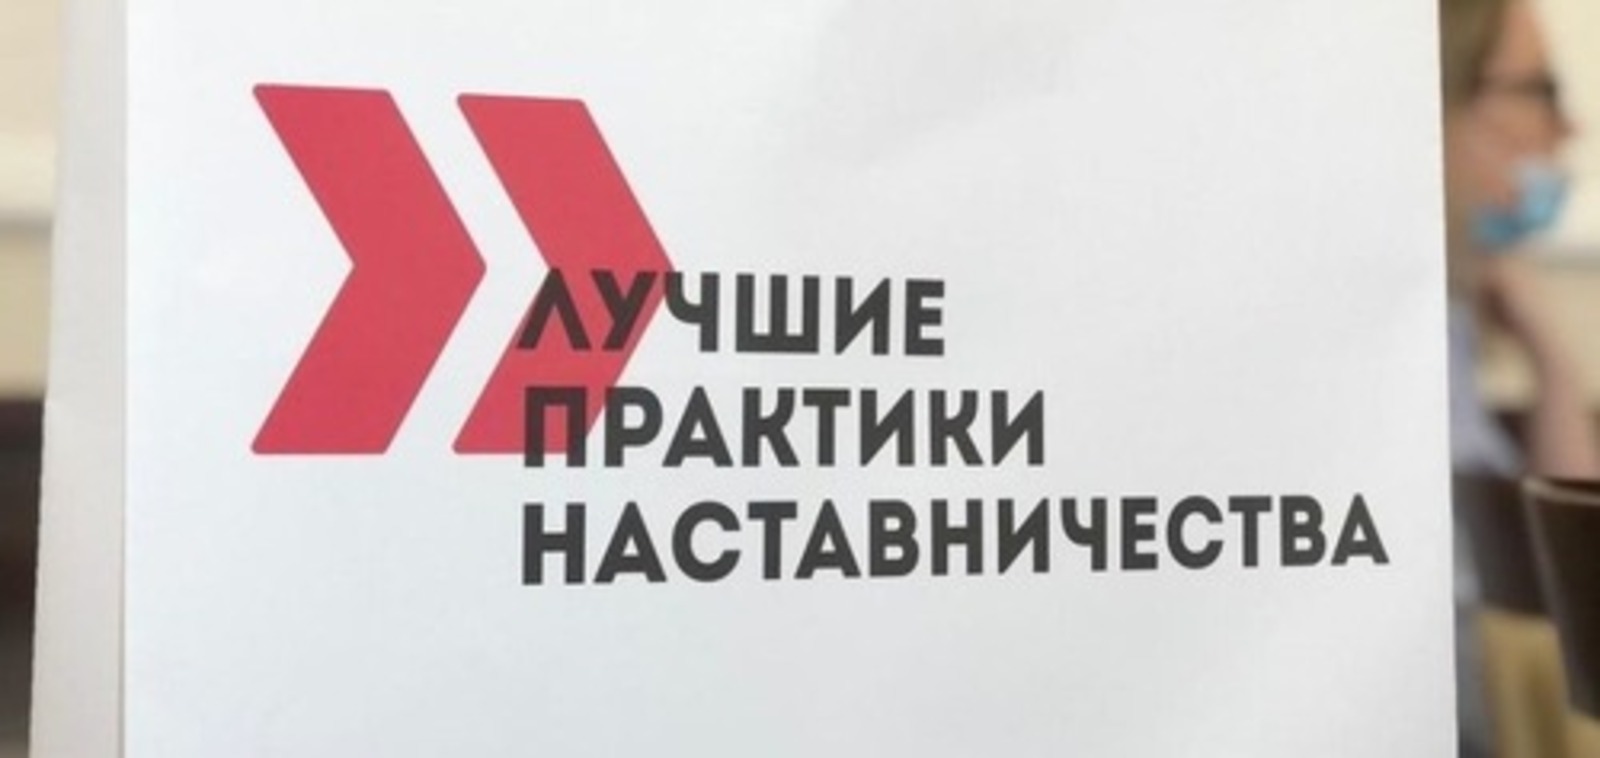 Предприятия Башкортостана могут подать заявки на Всероссийский этап конкурса «Лучшие практики наставничества»